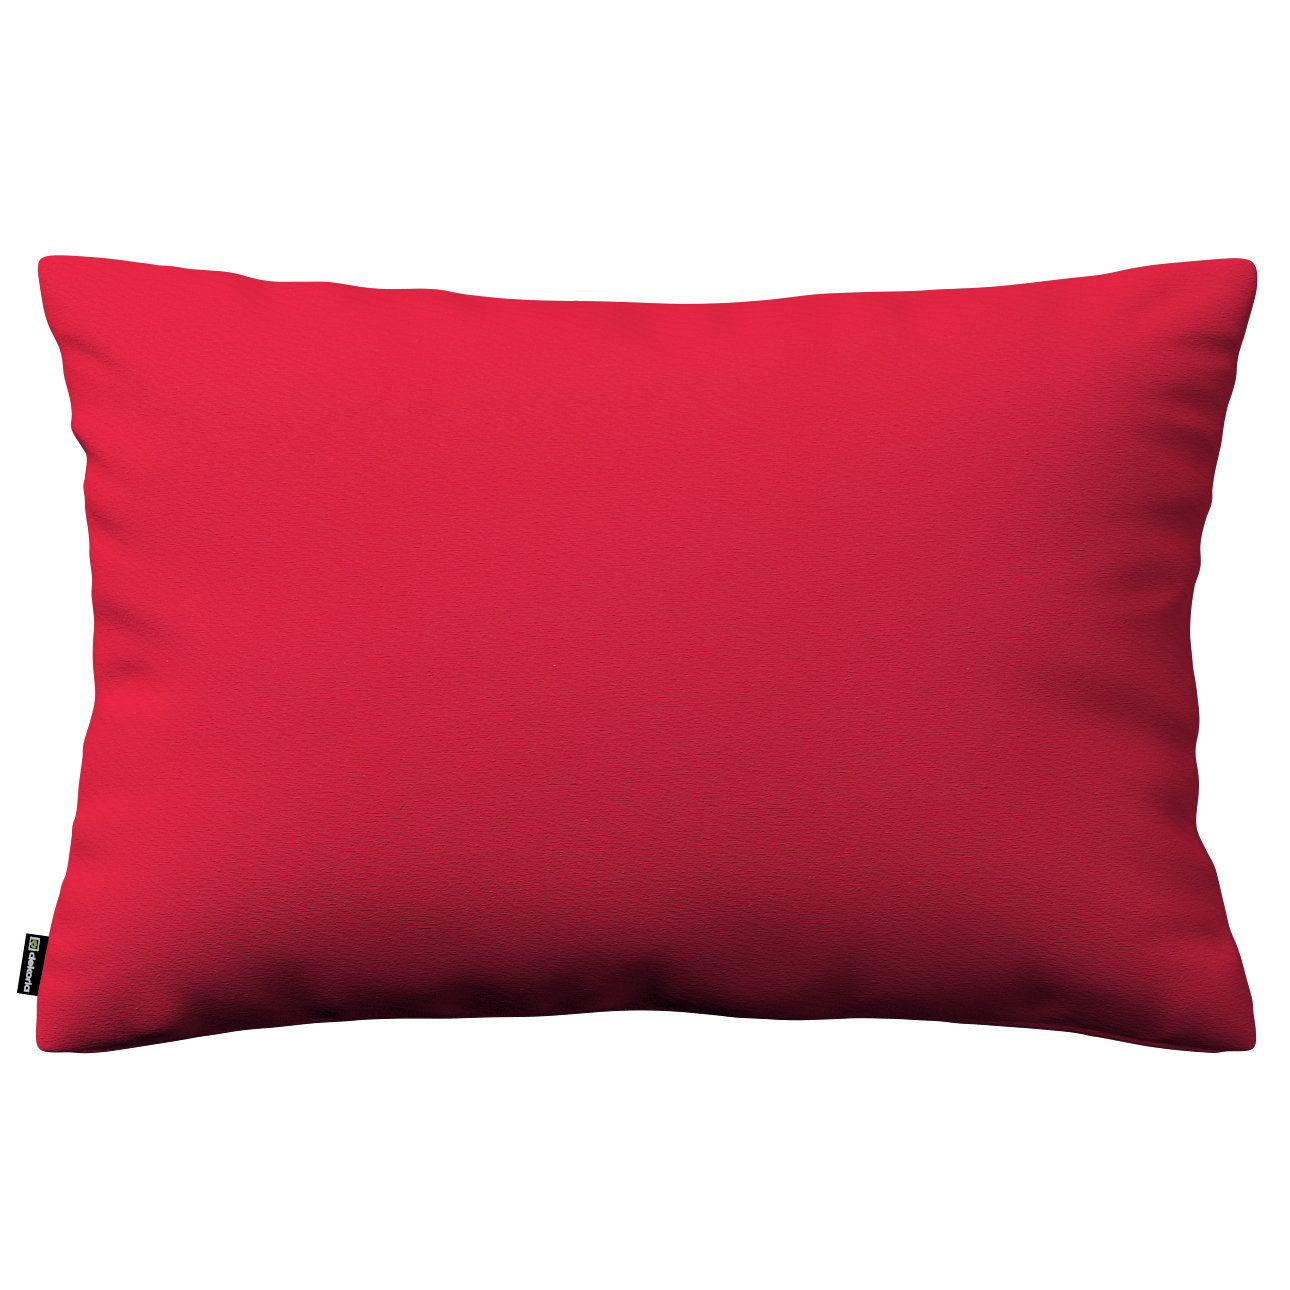 Dekoria Karin - jednoduchá obliečka, 60x40cm, červená, 60 x 40 cm, Quadro, 136-19